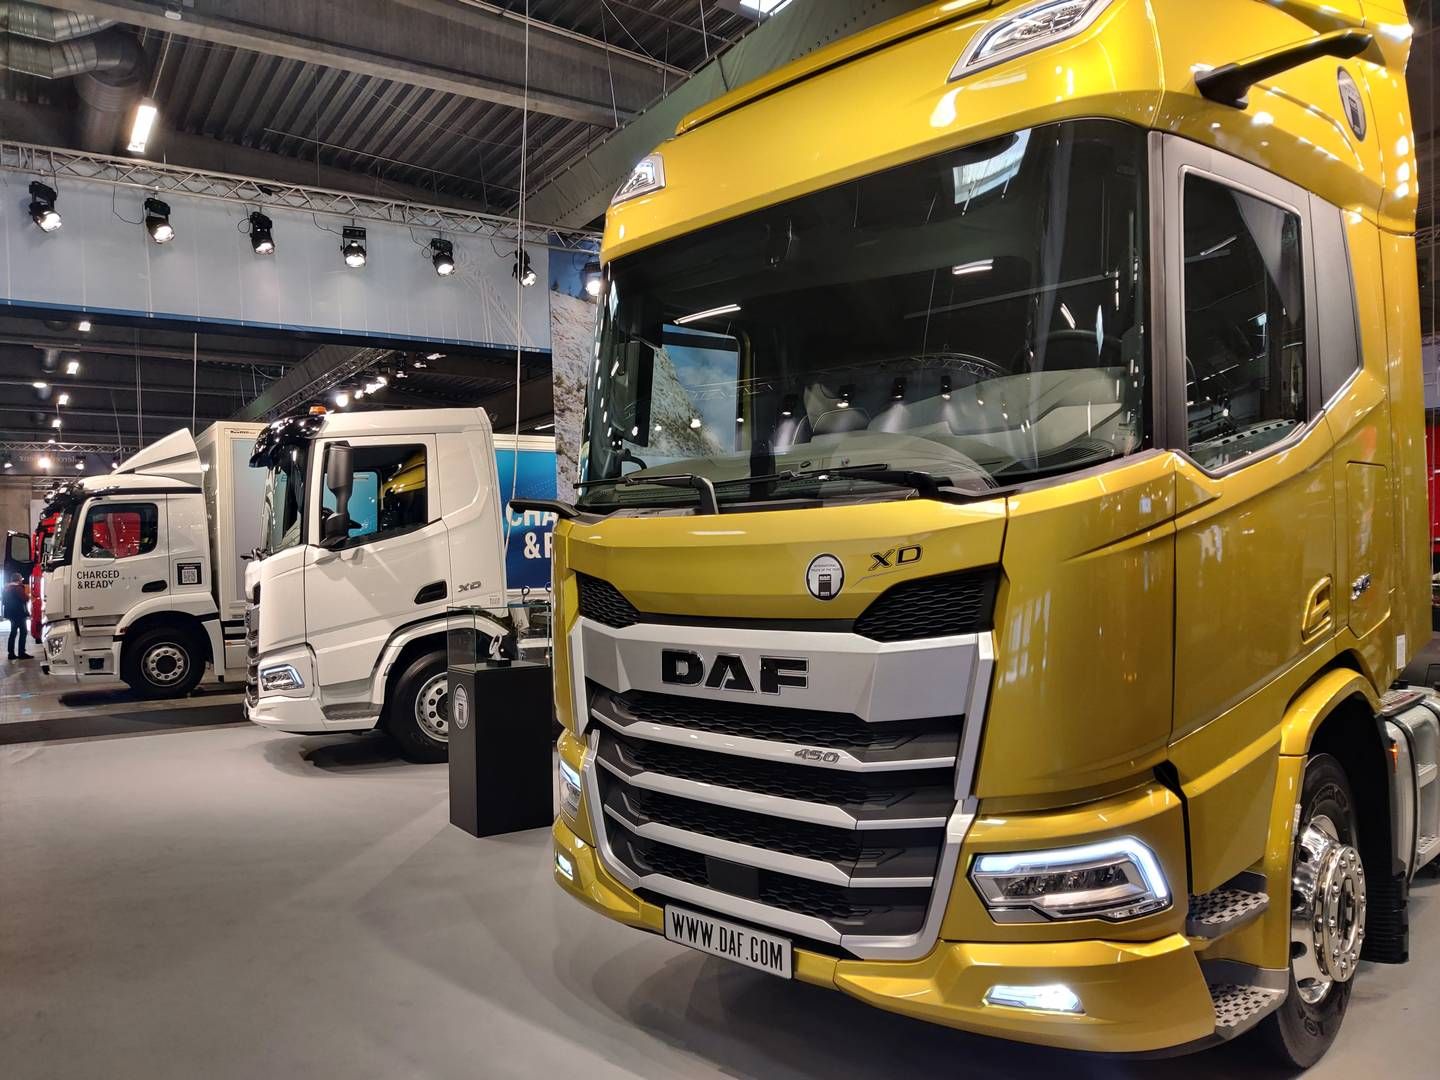 DAF går efter at sælge 50 ellastbiler i Danmark i år, hvis alt går vel. | Foto: Anja Hauge